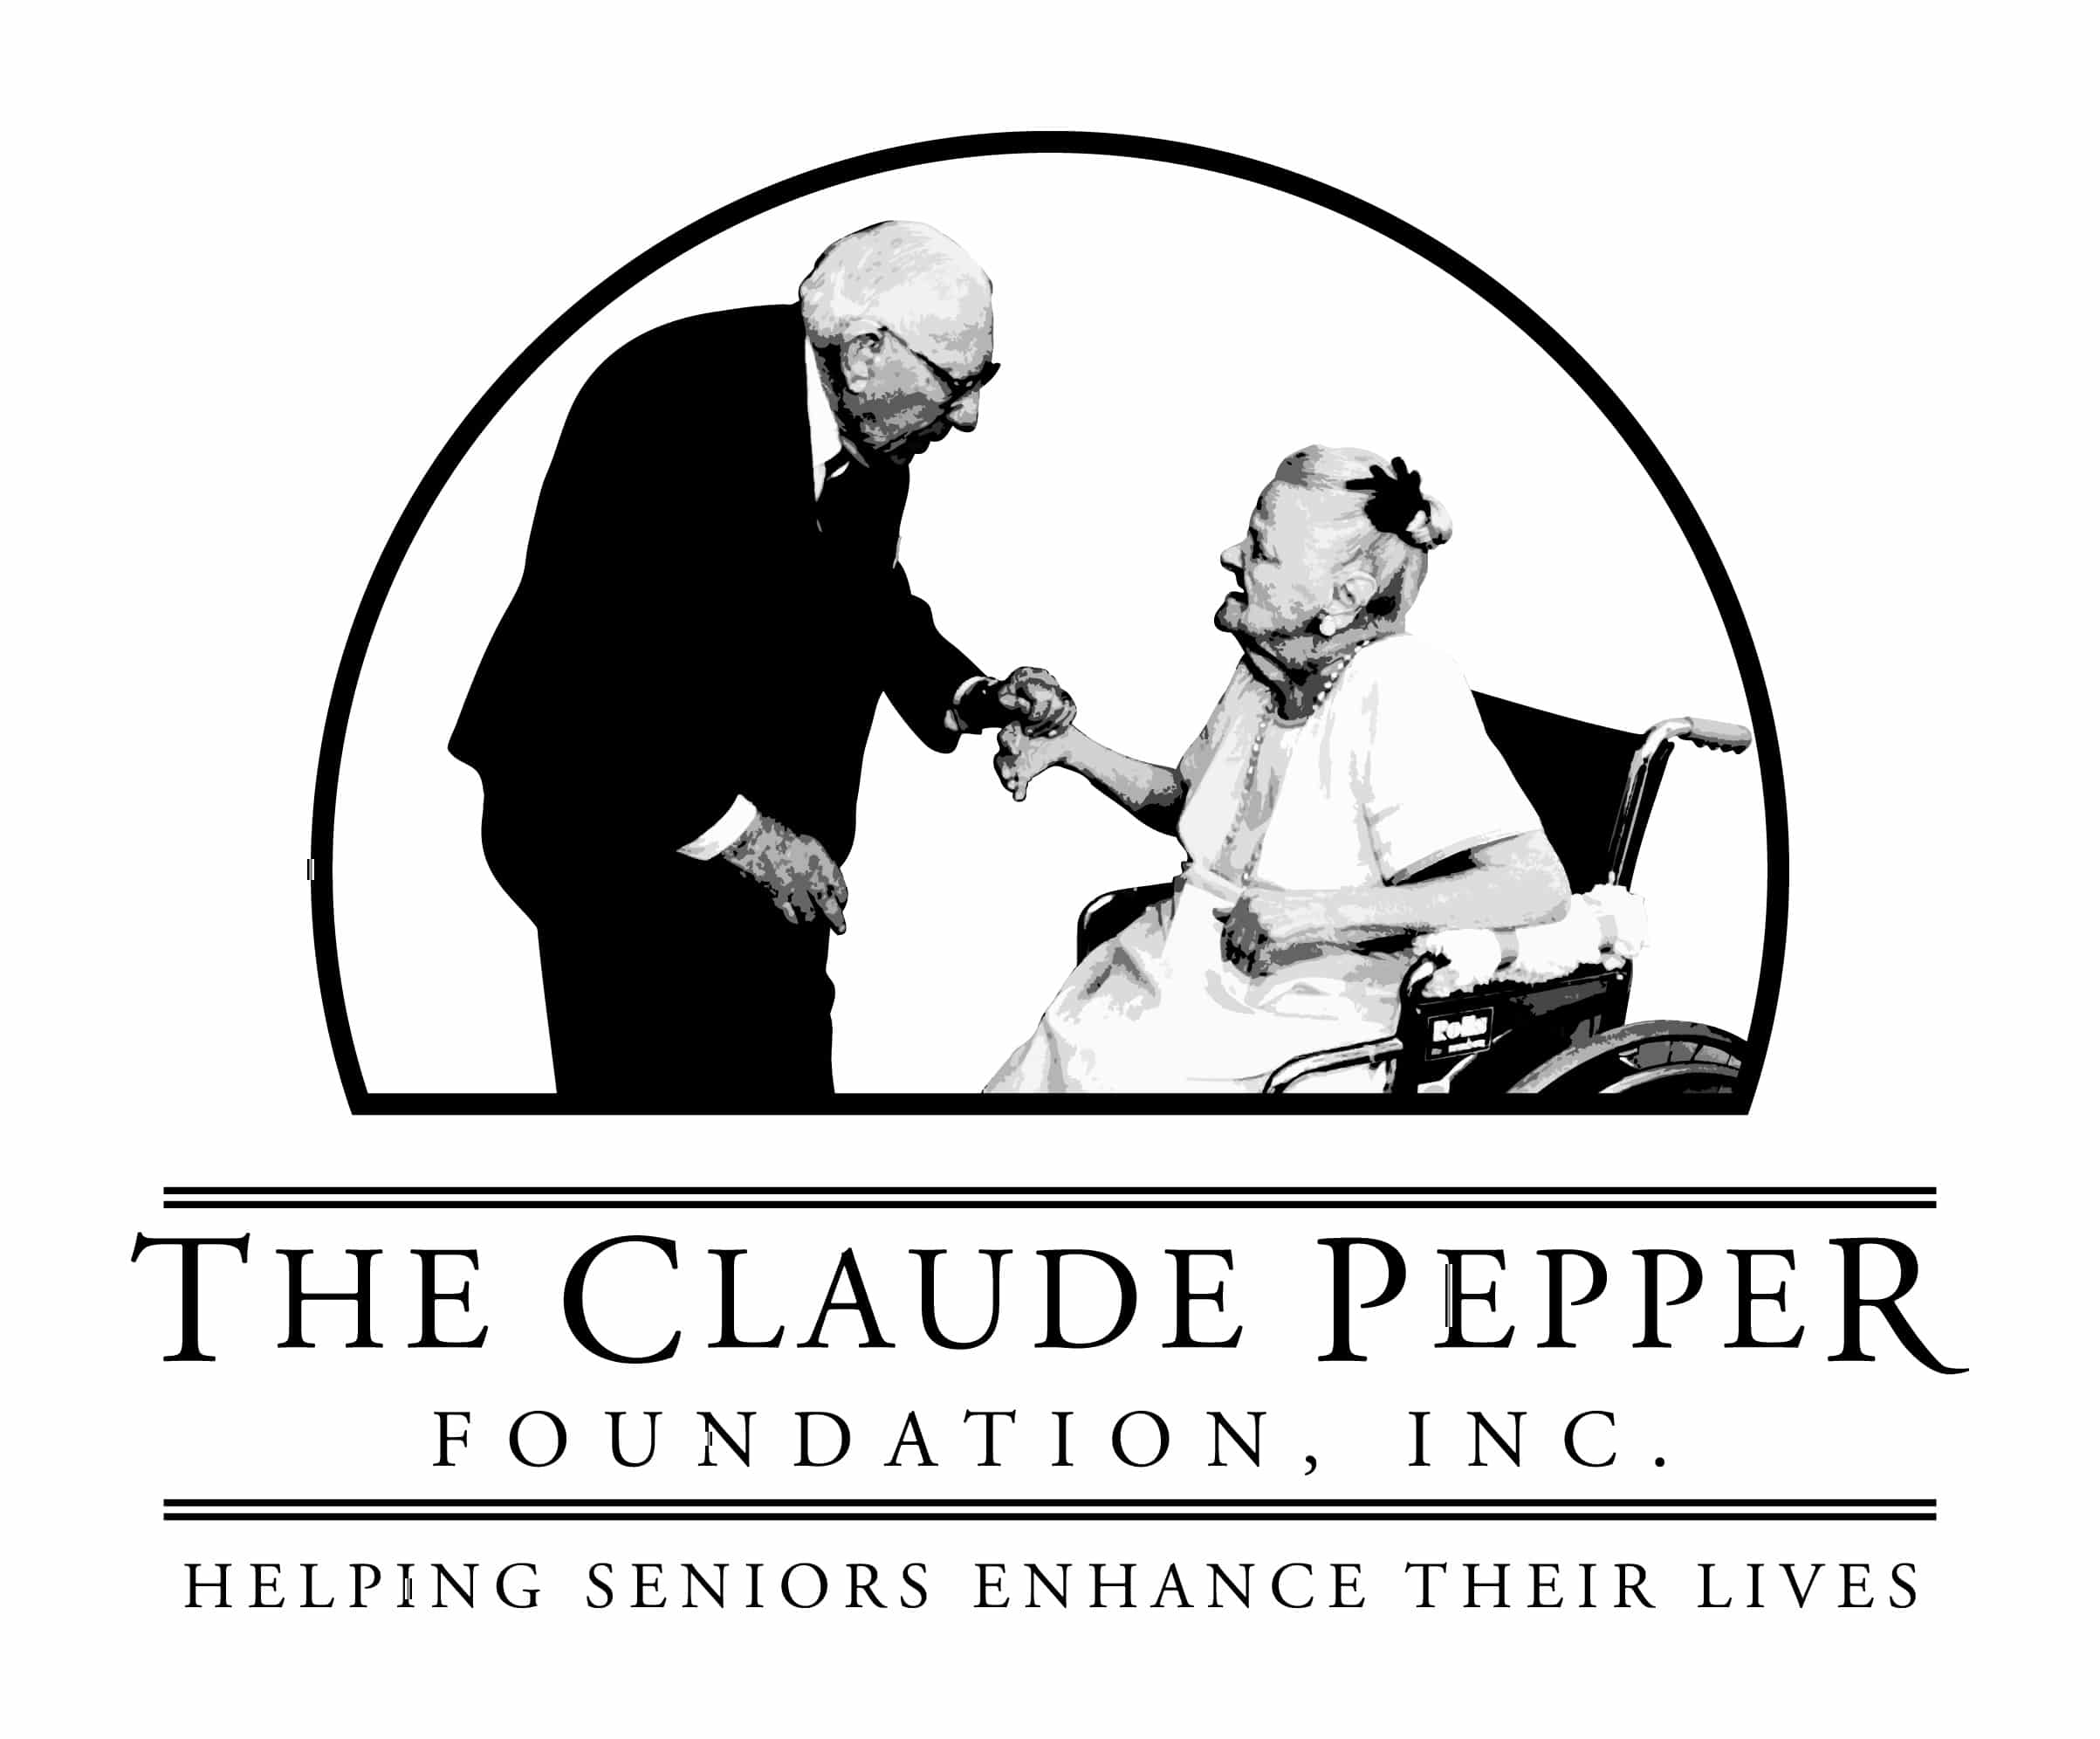 The Claude Pepper Foundation, Inc. logo.